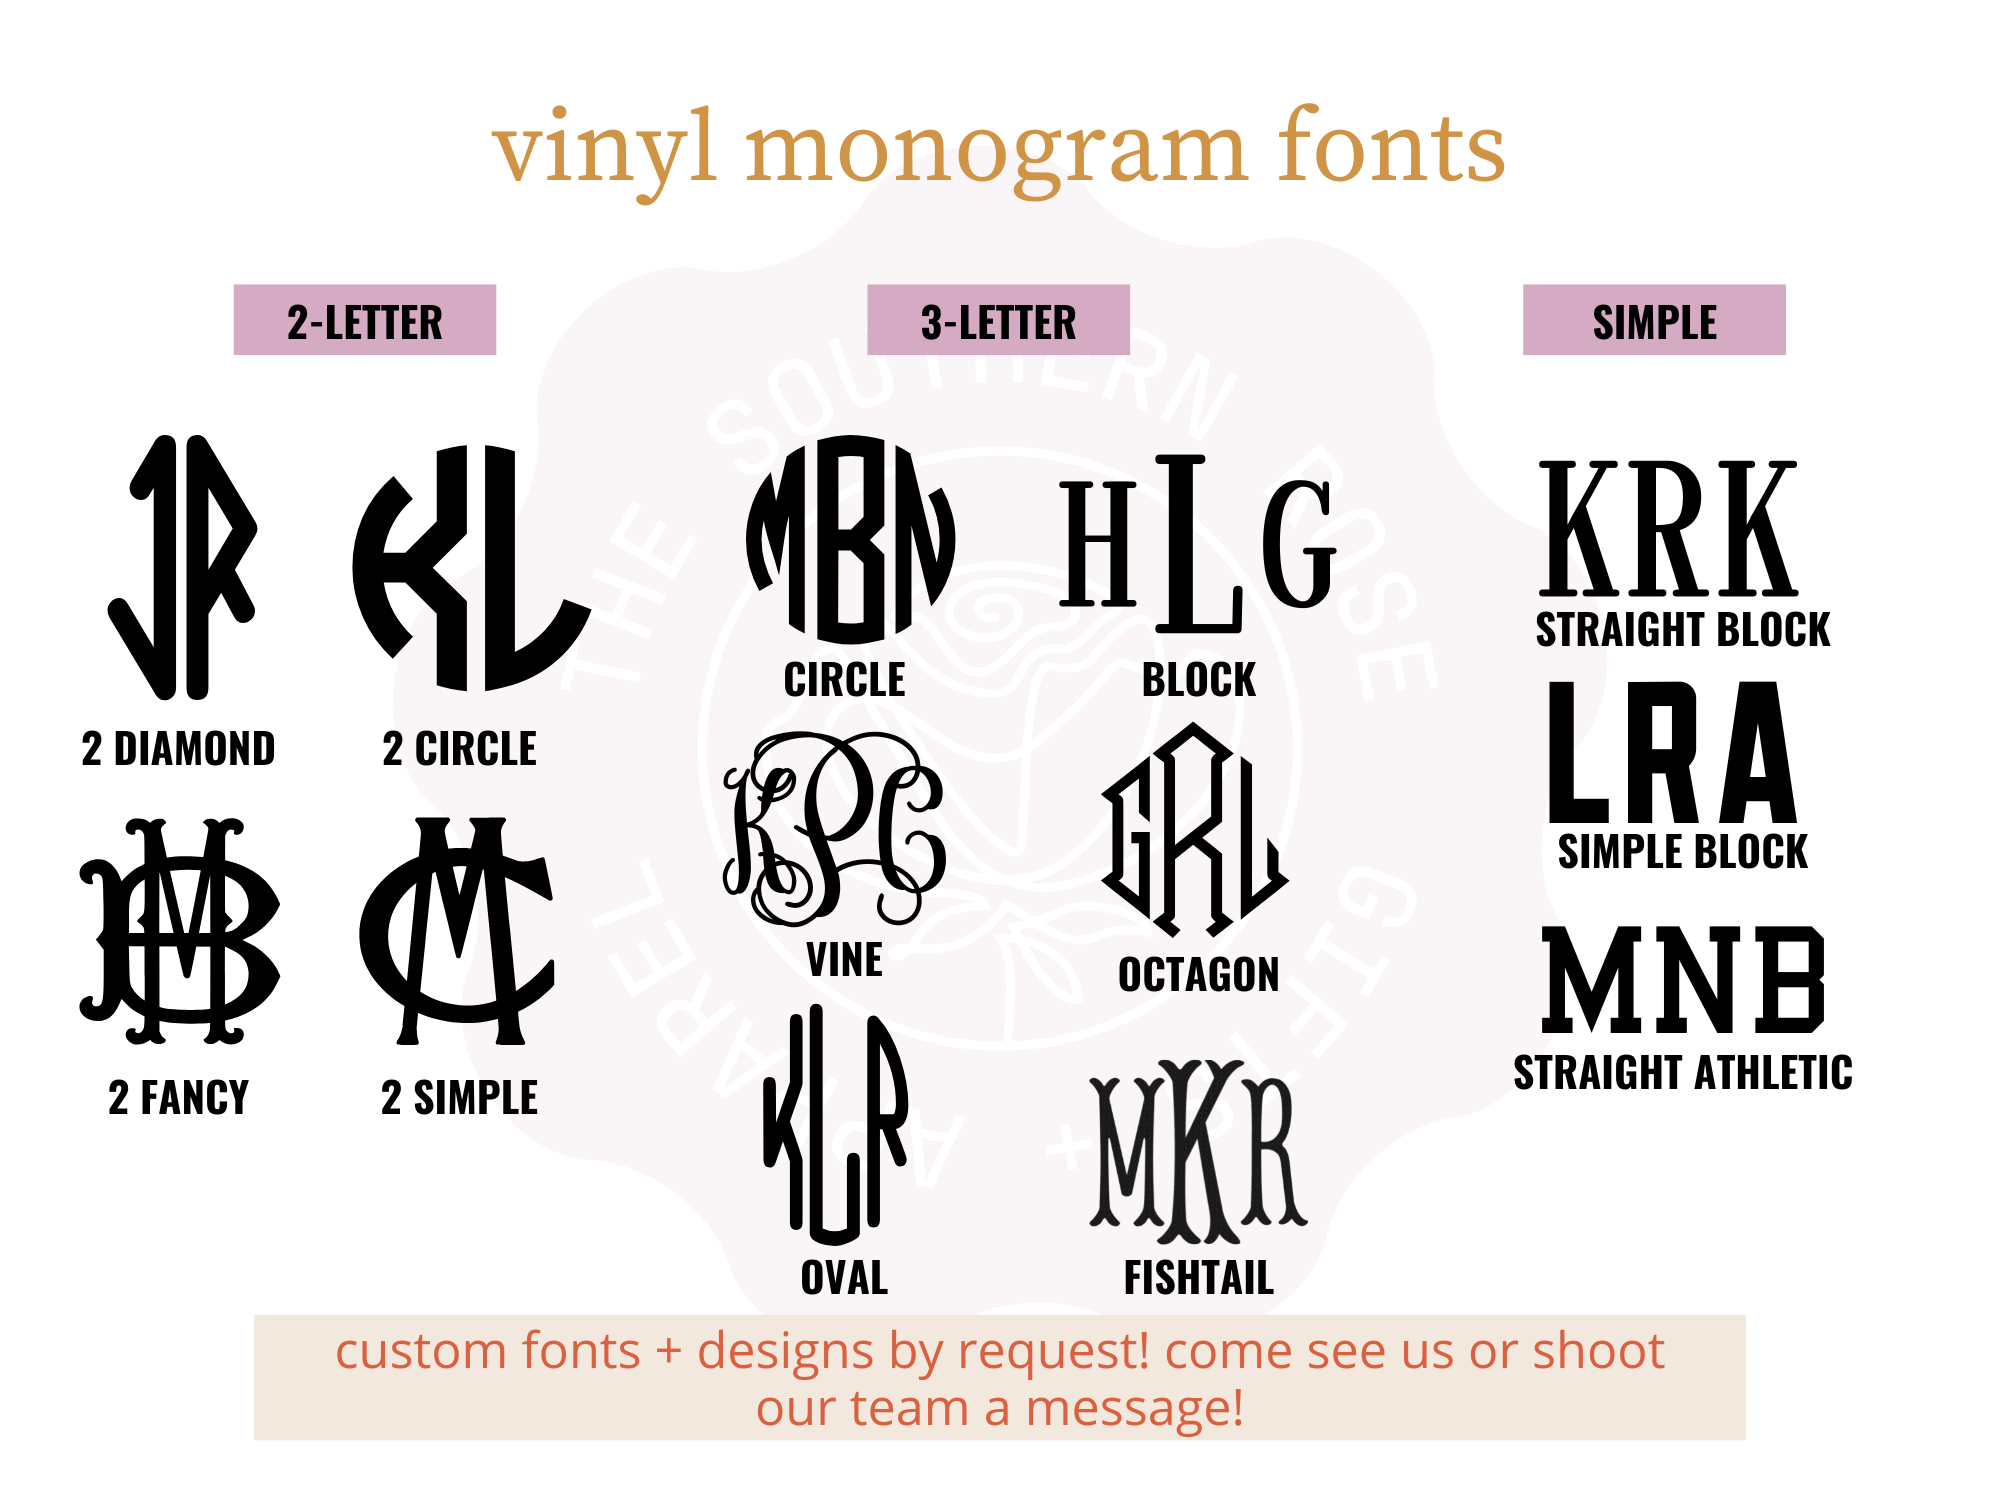 https://cdn11.bigcommerce.com/s-qiszfjgfwj/images/stencil/original/products/3685/15225/tsr2-vinyl-monogram-fonts__27910.1677003060.png?c=2